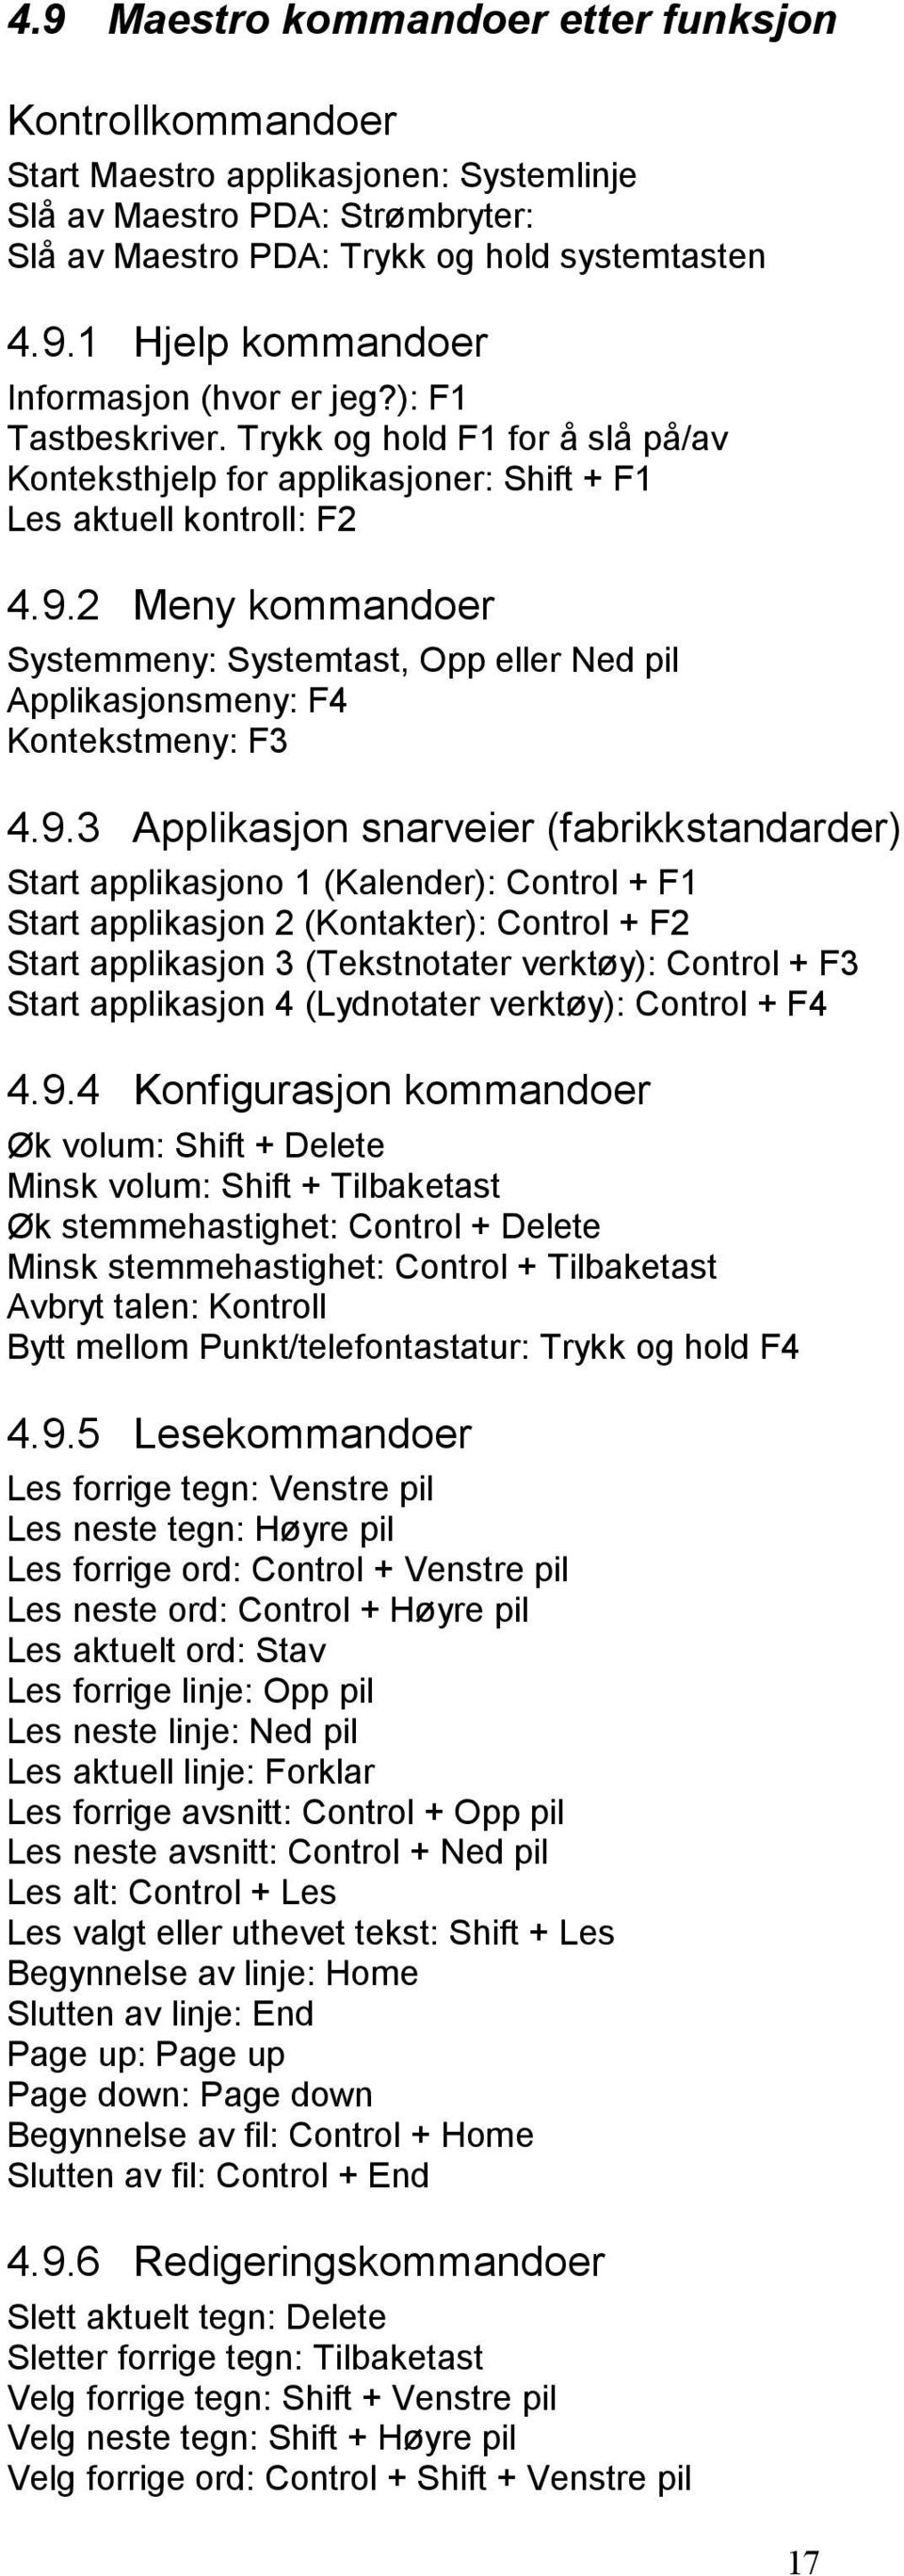 2 Meny kommandoer Systemmeny: Systemtast, Opp eller Ned pil Applikasjonsmeny: F4 Kontekstmeny: F3 4.9.